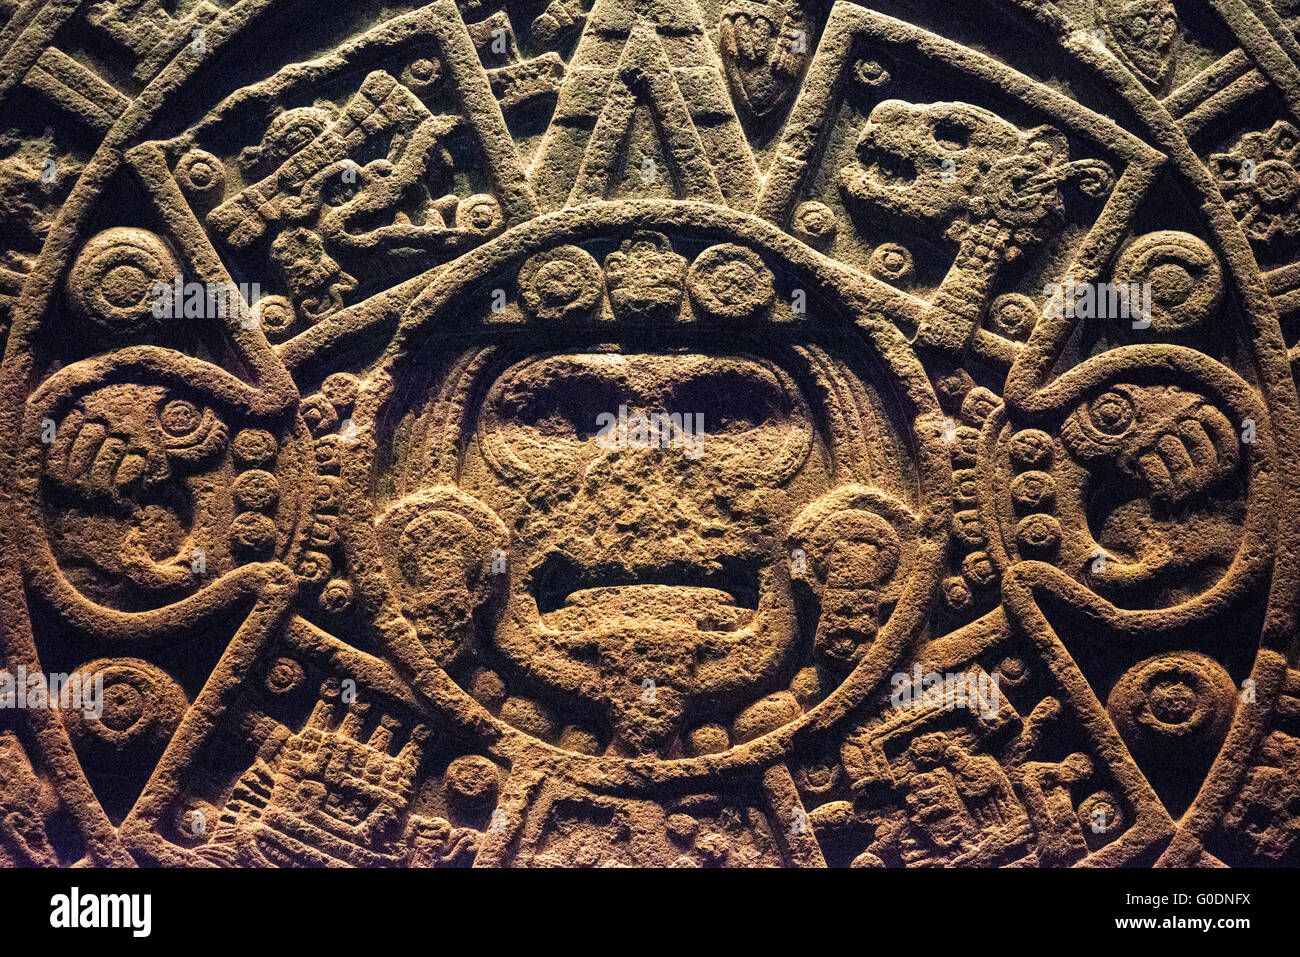 Mexiko-Stadt, Mexiko - vermutlich Anfang des 16. Jahrhunderts bis Ende des 15. Jahrhunderts, ist der Stein der Sonne, einer großen Scheibe fast 12 Fuß und 24 Tonnen. Entdeckt im Jahre 1790 an der Plaza Mayor, wurde der Stein der Sonne ursprünglich als die Azteken-Kalender misidentified. Es wurde vor kurzem als eine große Gladiatorenkämpfe Opferaltar, bekannt als ein Temalacatl identifiziert. Es war nicht wegen ein tiefer Riss fertig, die von einer Seite in die Mitte des Stückes auf der Rückseite läuft. Trotz der Fraktur wurde es verwendet, um die Kämpfe zwischen Krieger in der Tlacaxipehualiztli-Zeremonie Bühne. Es Stockfoto